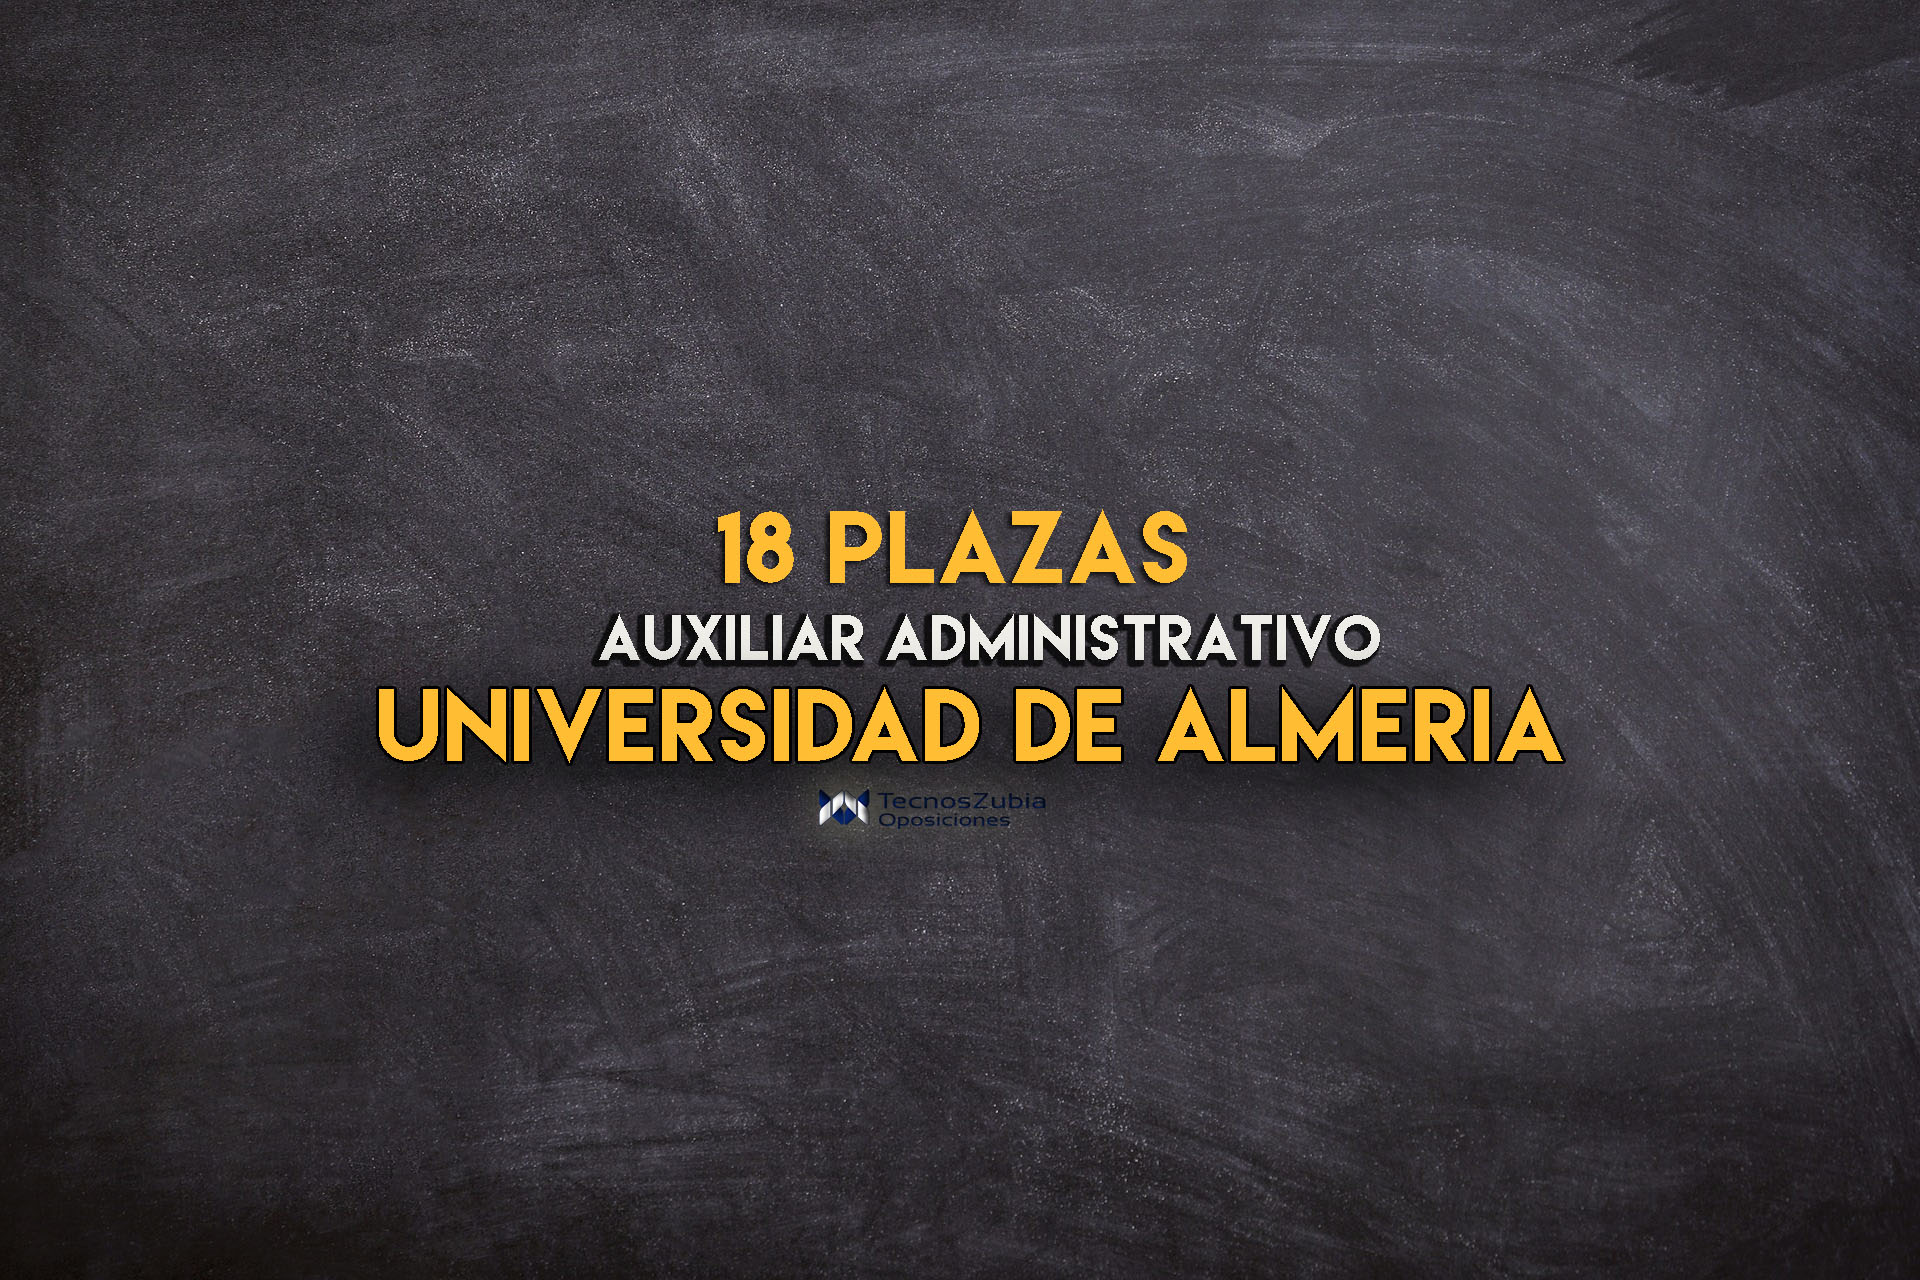 Universidad Almería. Plazas Auxiliar Administrativo. 18 plazas.